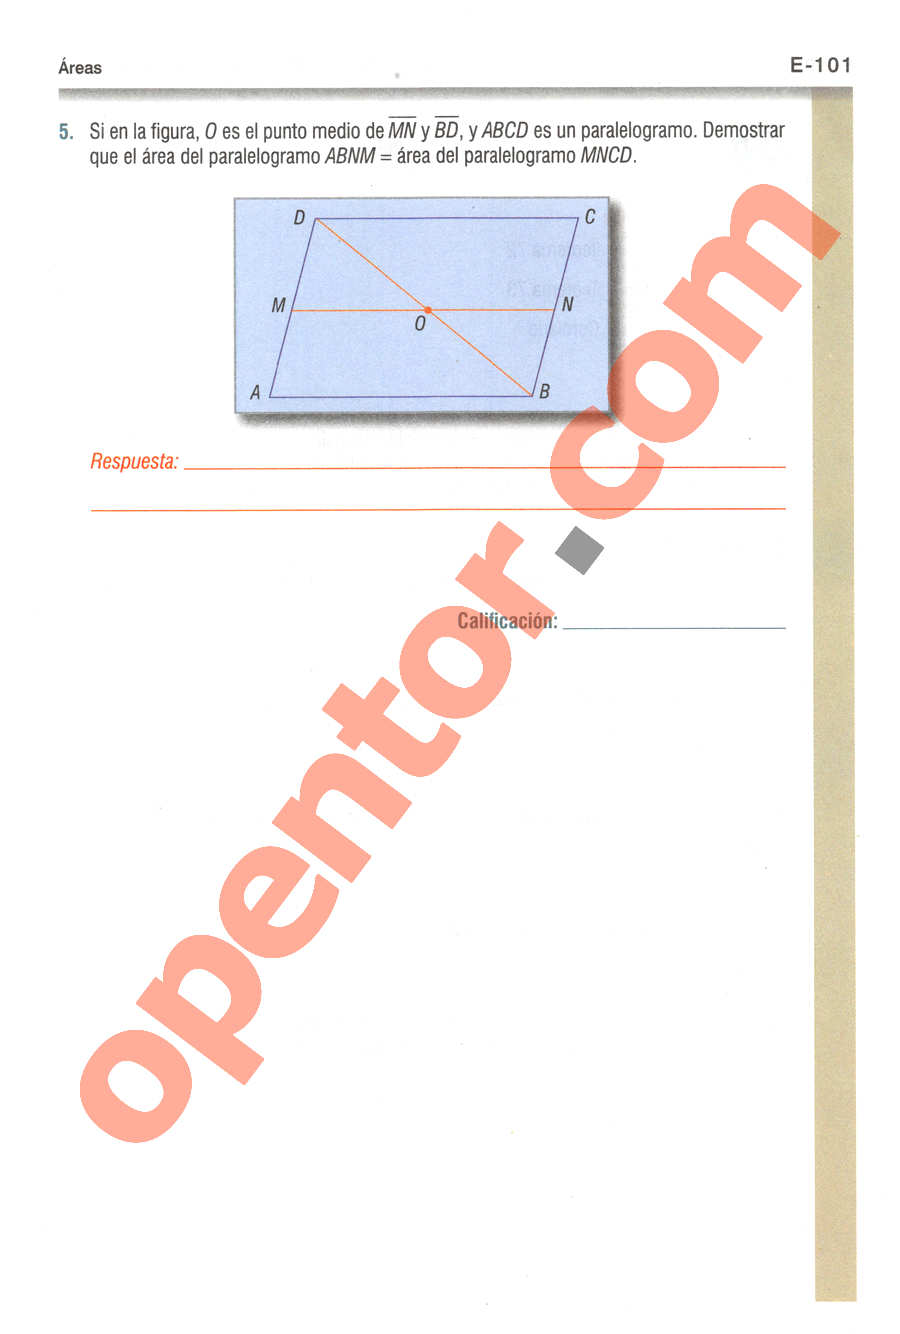 Geometría y Trigonometría de Baldor - Página E101